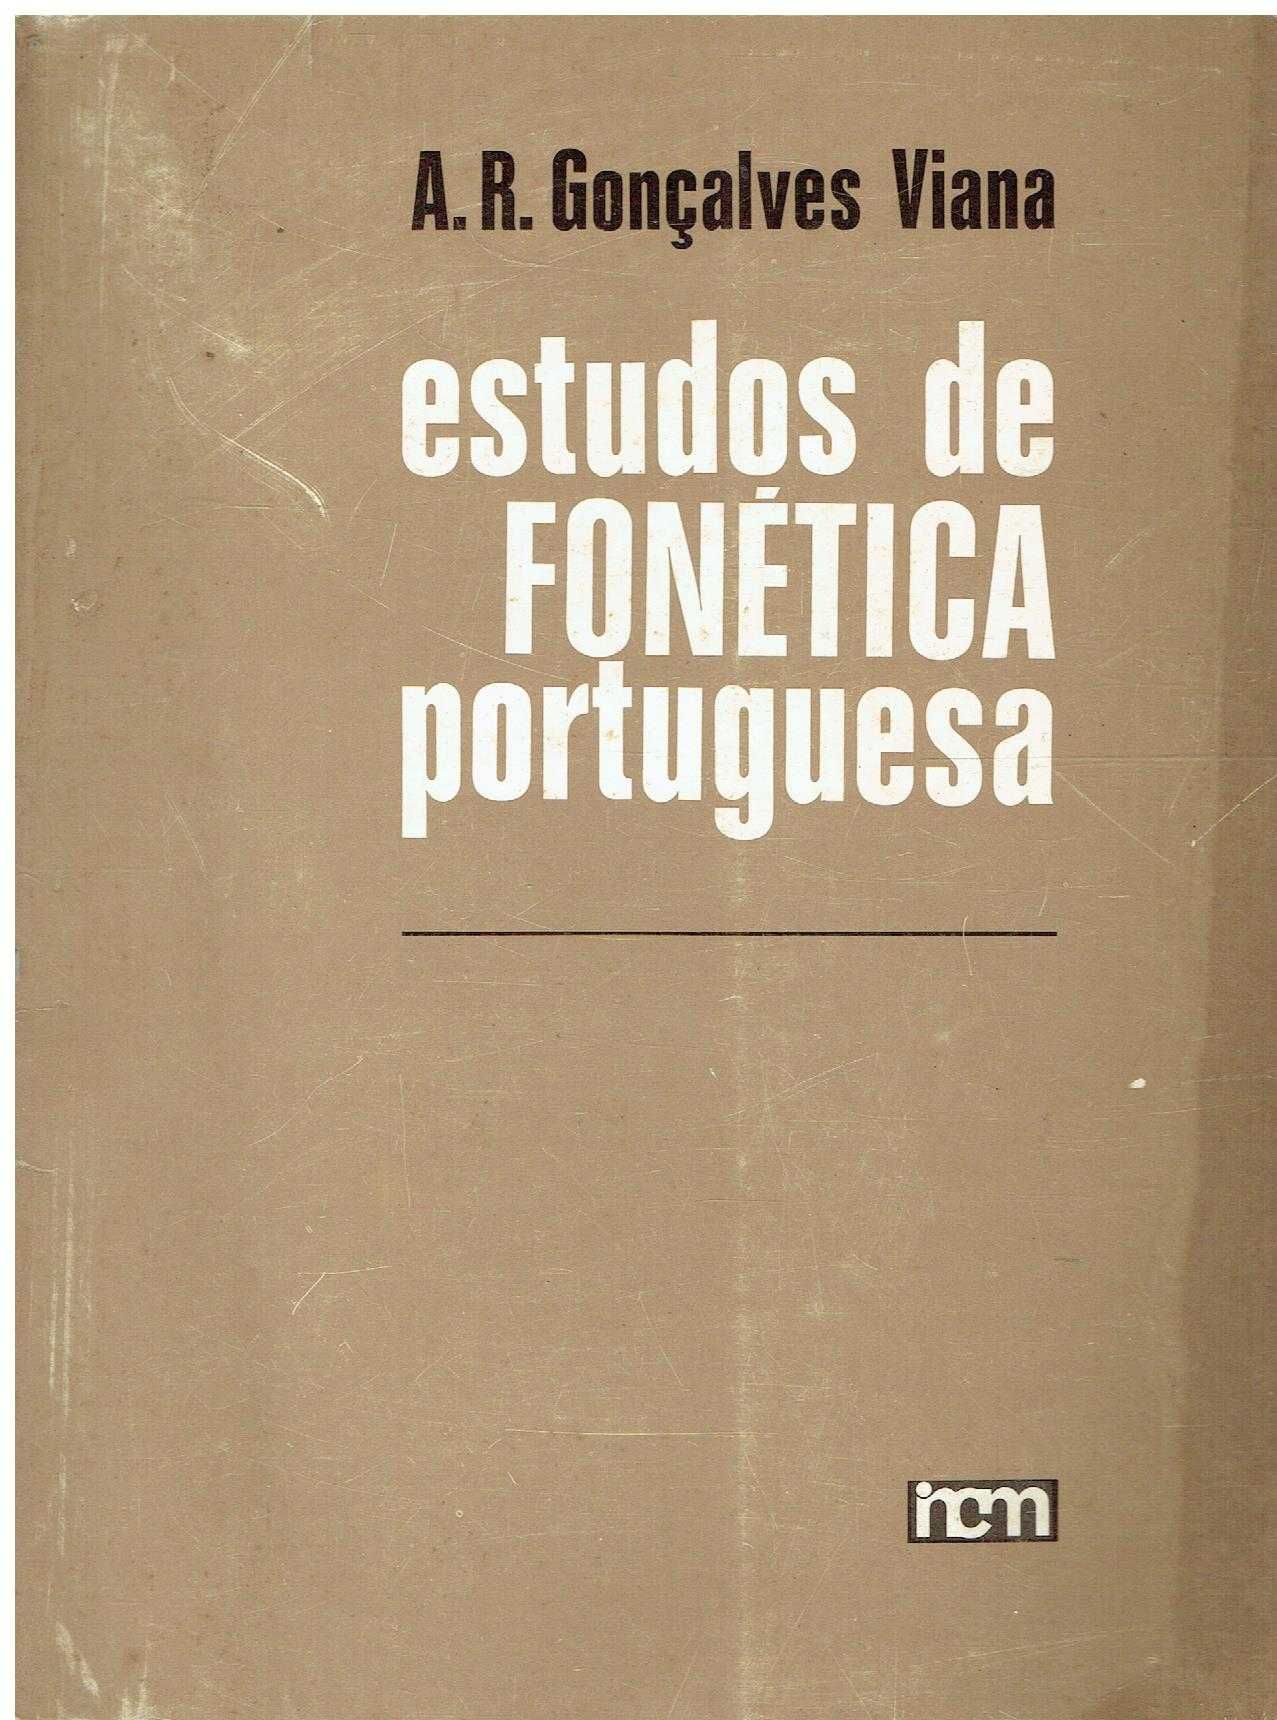 7941

Estudos de fonética portuguesa 
de Aniceto  R. Gonçalves Viana